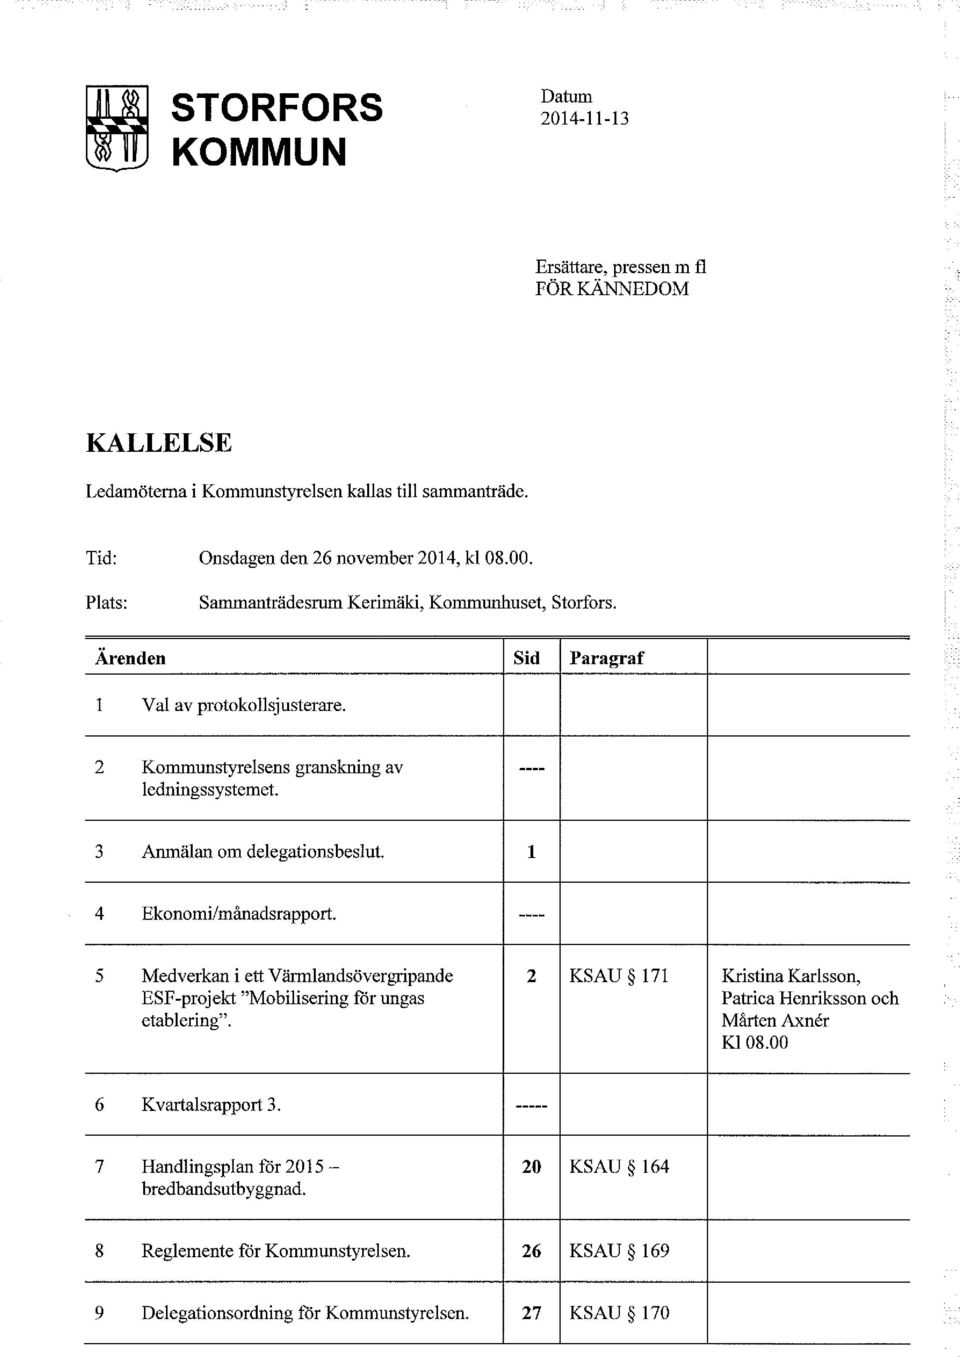 3 Anmälan om delegationsbeslut. 1 4 Ekonomi/månadsrapport. ---- 5 Medverkan i ett Värmlandsövergripande 2 KSAU 171 ESF-projekt "Mobilisering för ungas etablering".